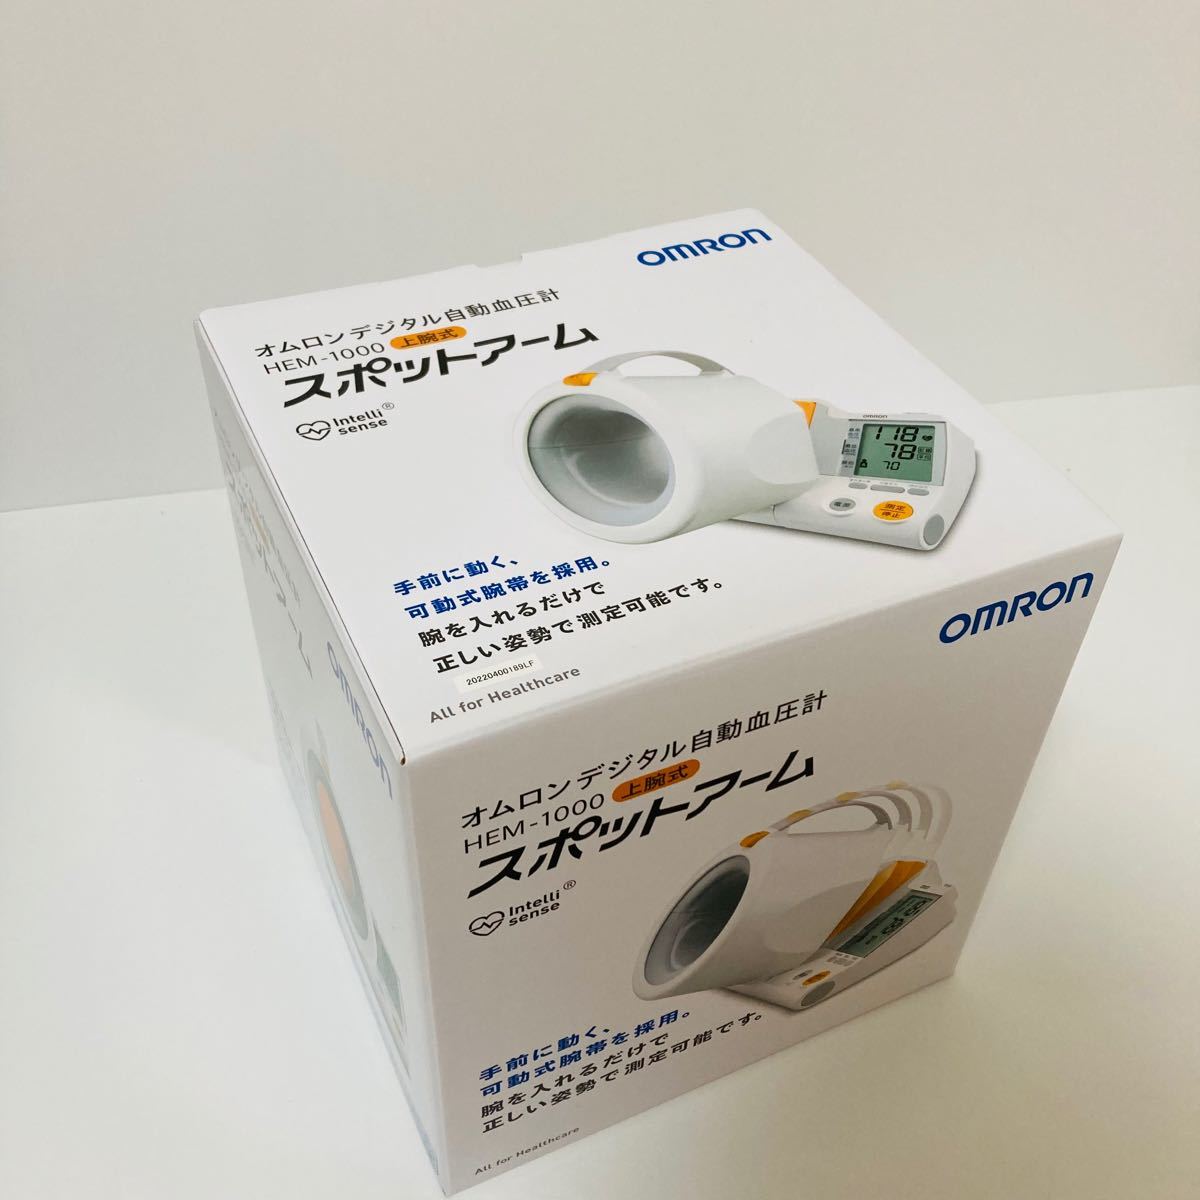 オムロン/上腕式自動血圧計/[HEM-1000]/スポットアーム/OMRON/新品未使用未開封